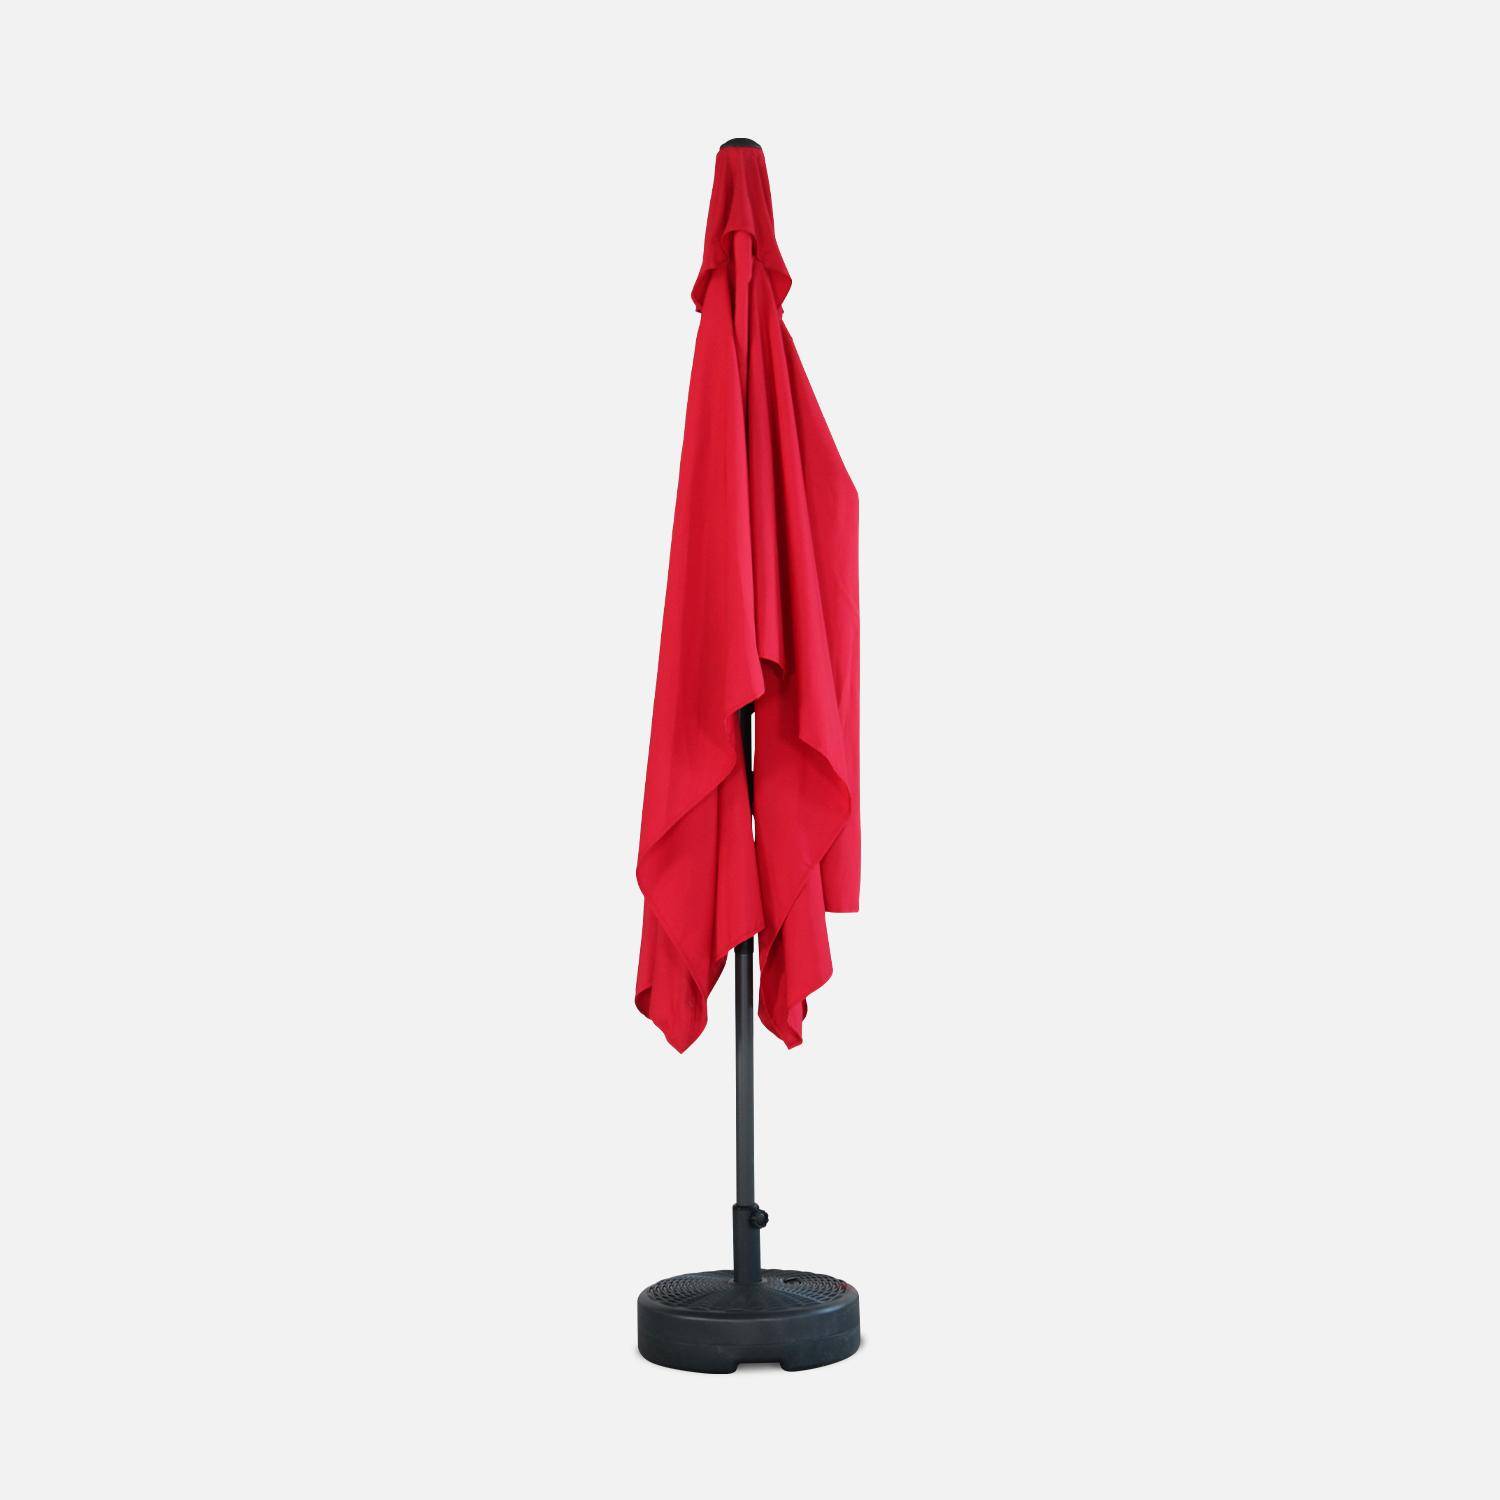 Parasol droit rectangulaire 2x3m - Touquet Rouge - mât central en aluminium orientable et manivelle d'ouverture,sweeek,Photo4